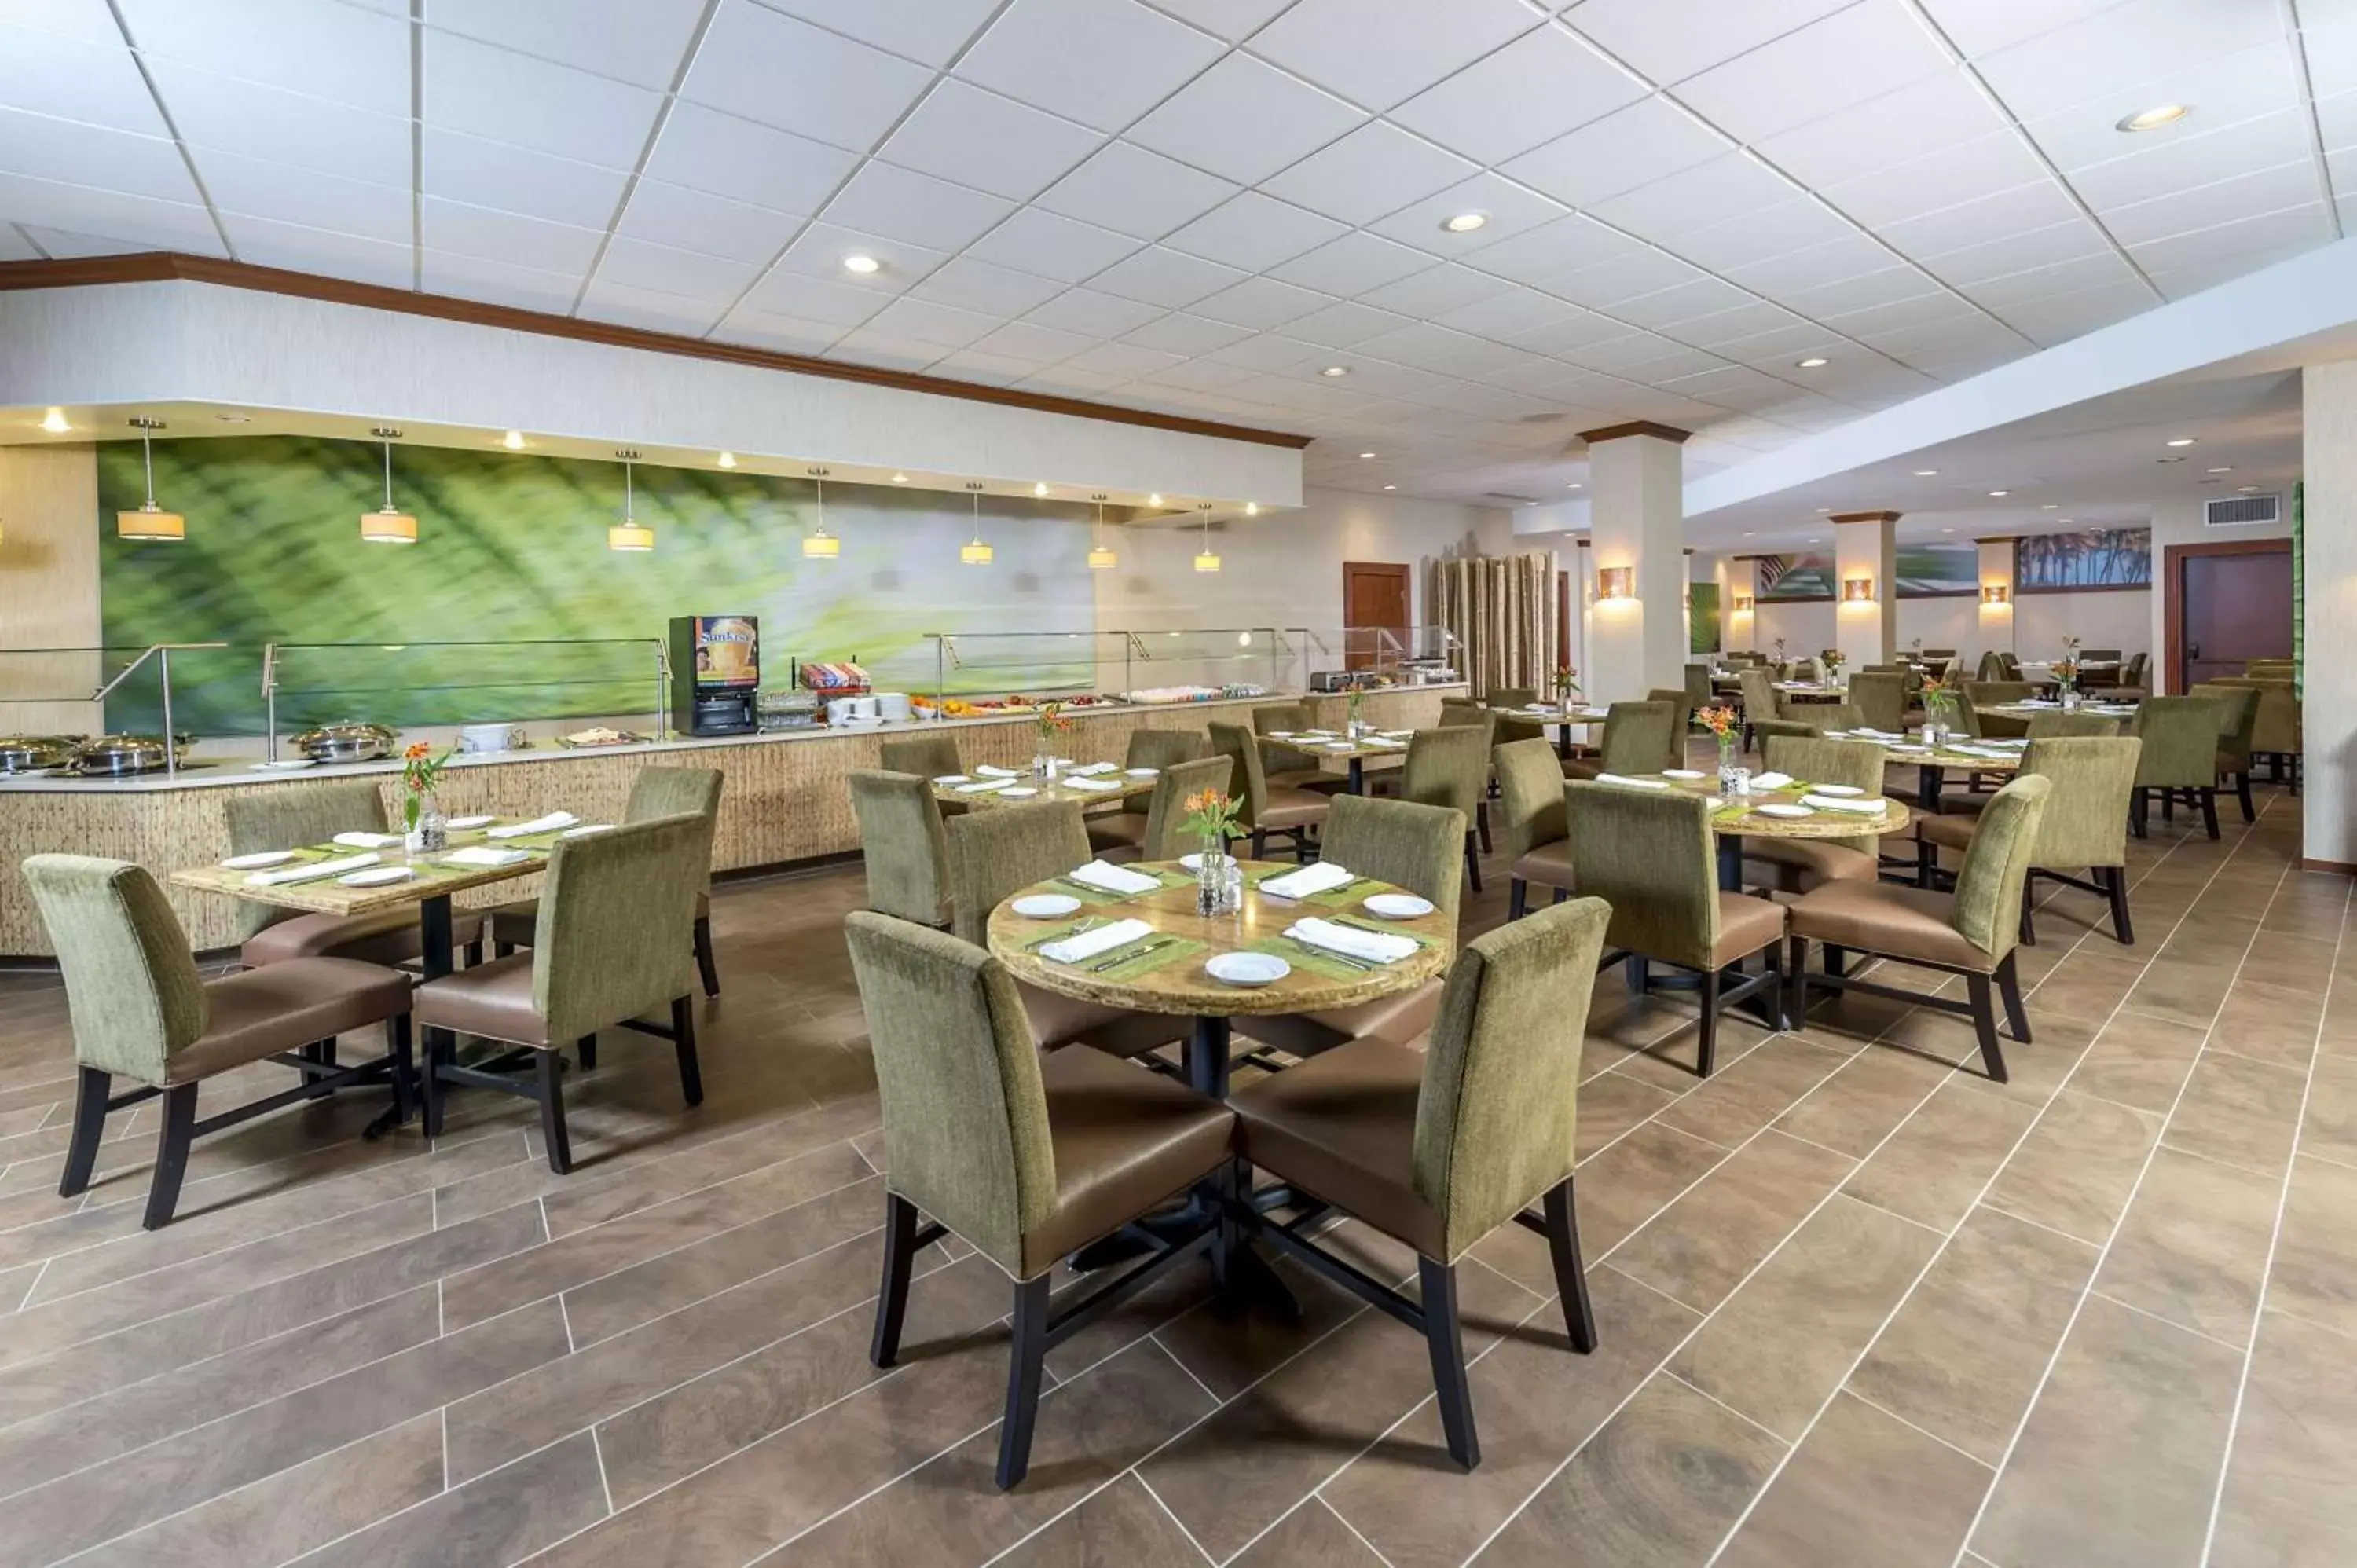 Restaurant/Places to Eat in Sonesta Miami Airport